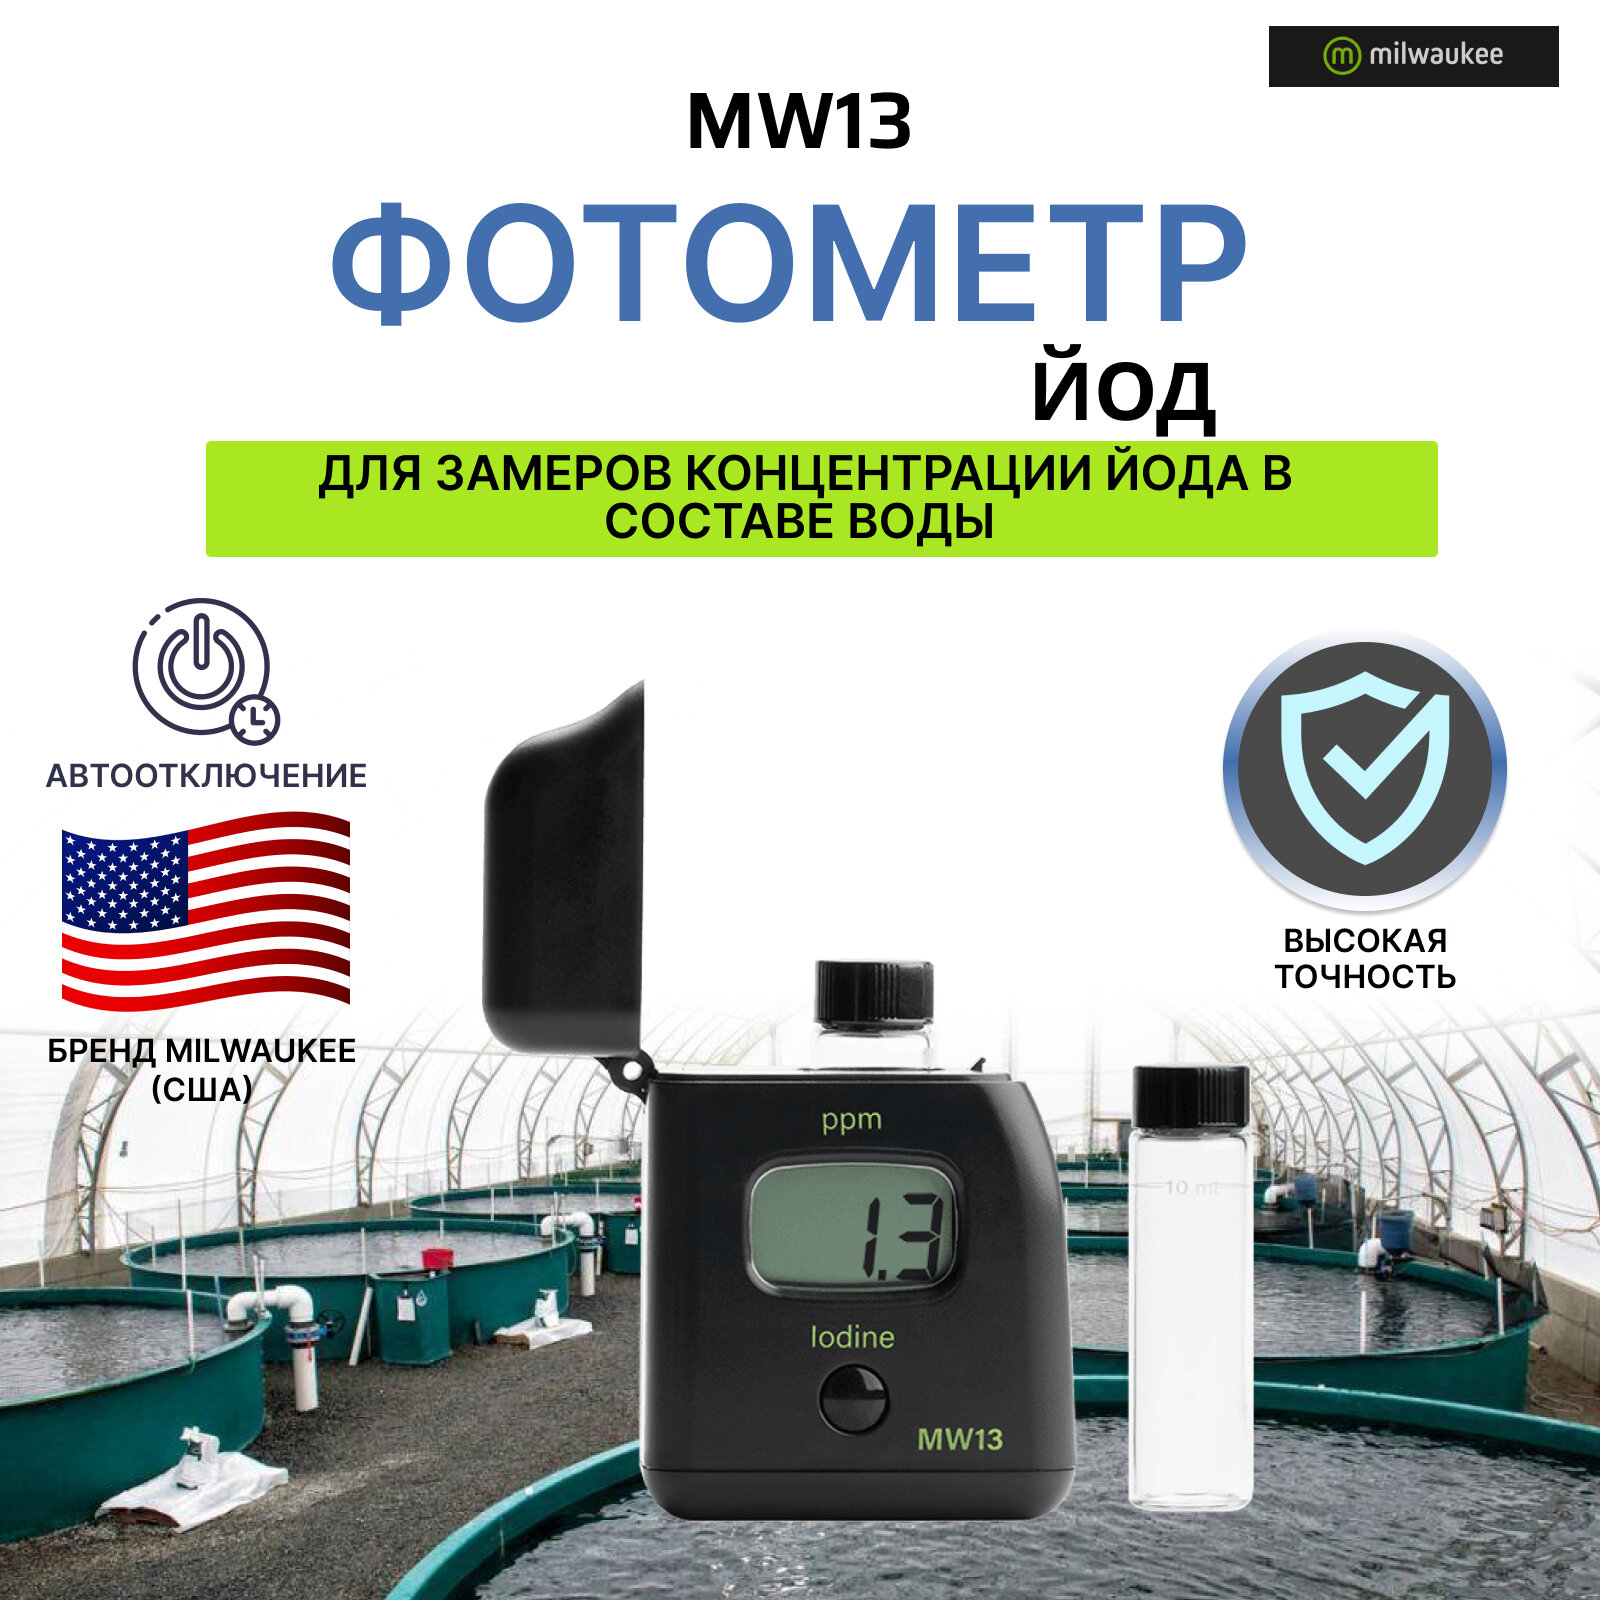 Фотометр Milwaukee Electronics (США) MW13 измеритель уровня содержания (концентрации) йода в воде